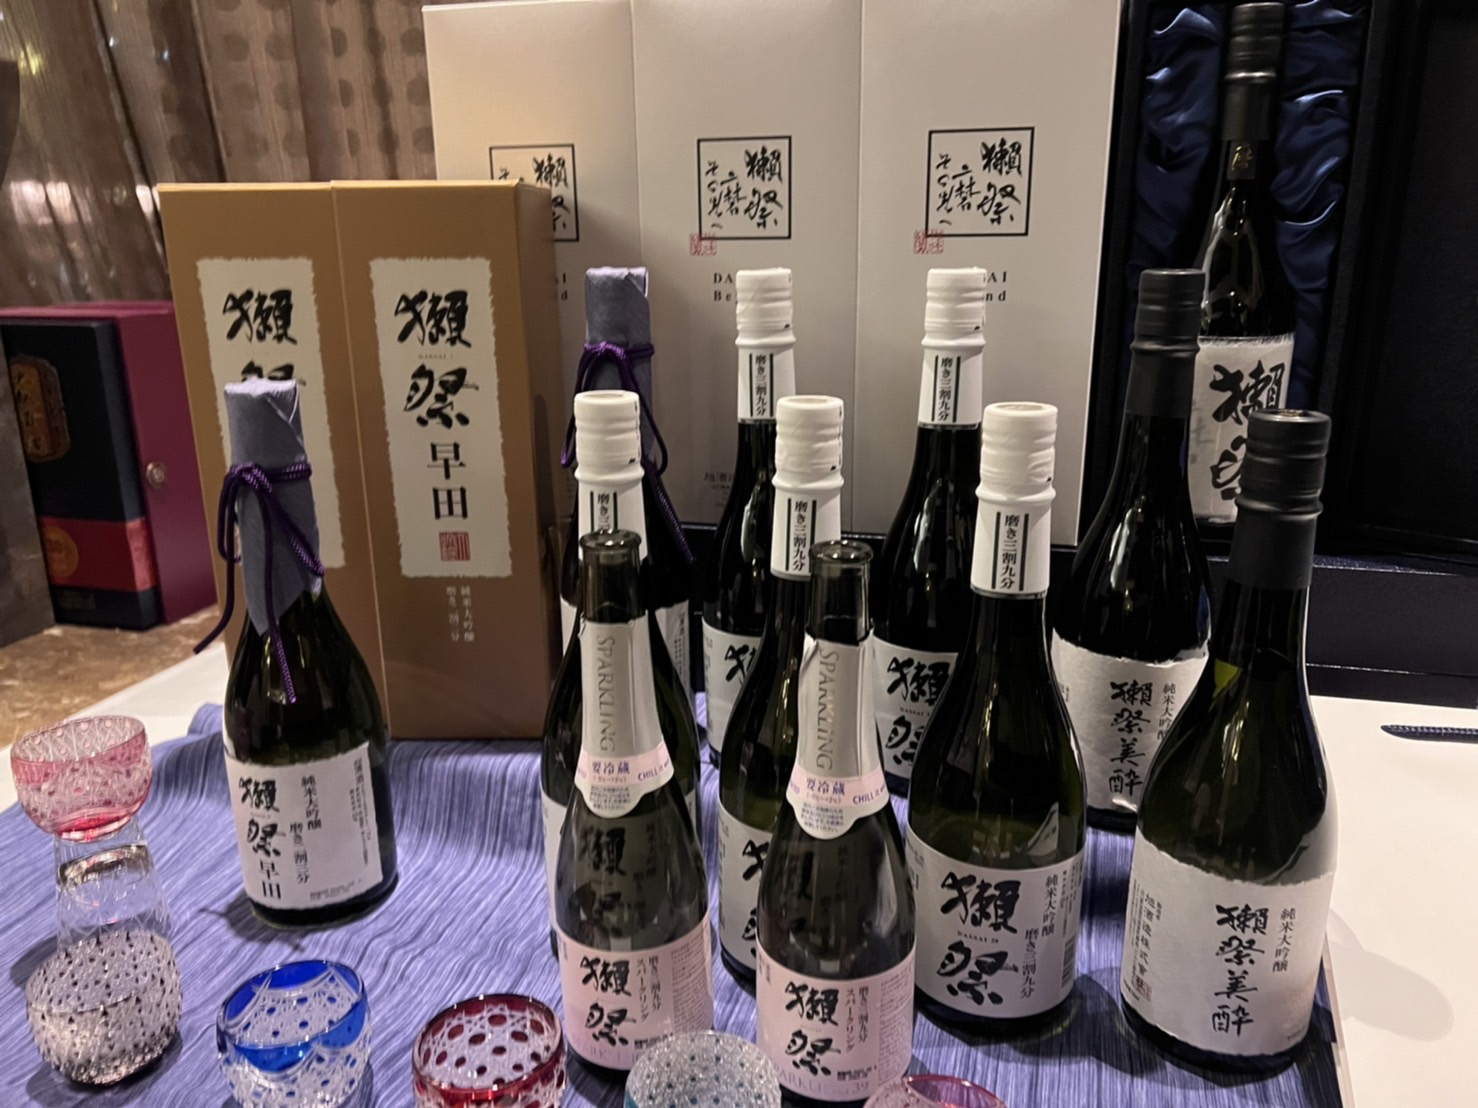 赤坂の中国料理の名店Wakiyaと純米大吟醸酒 獺祭、初のコラボレーションディナーを6月7日、8日に限定開催。異なる食文化の出会いを実現した至極のフルコース。